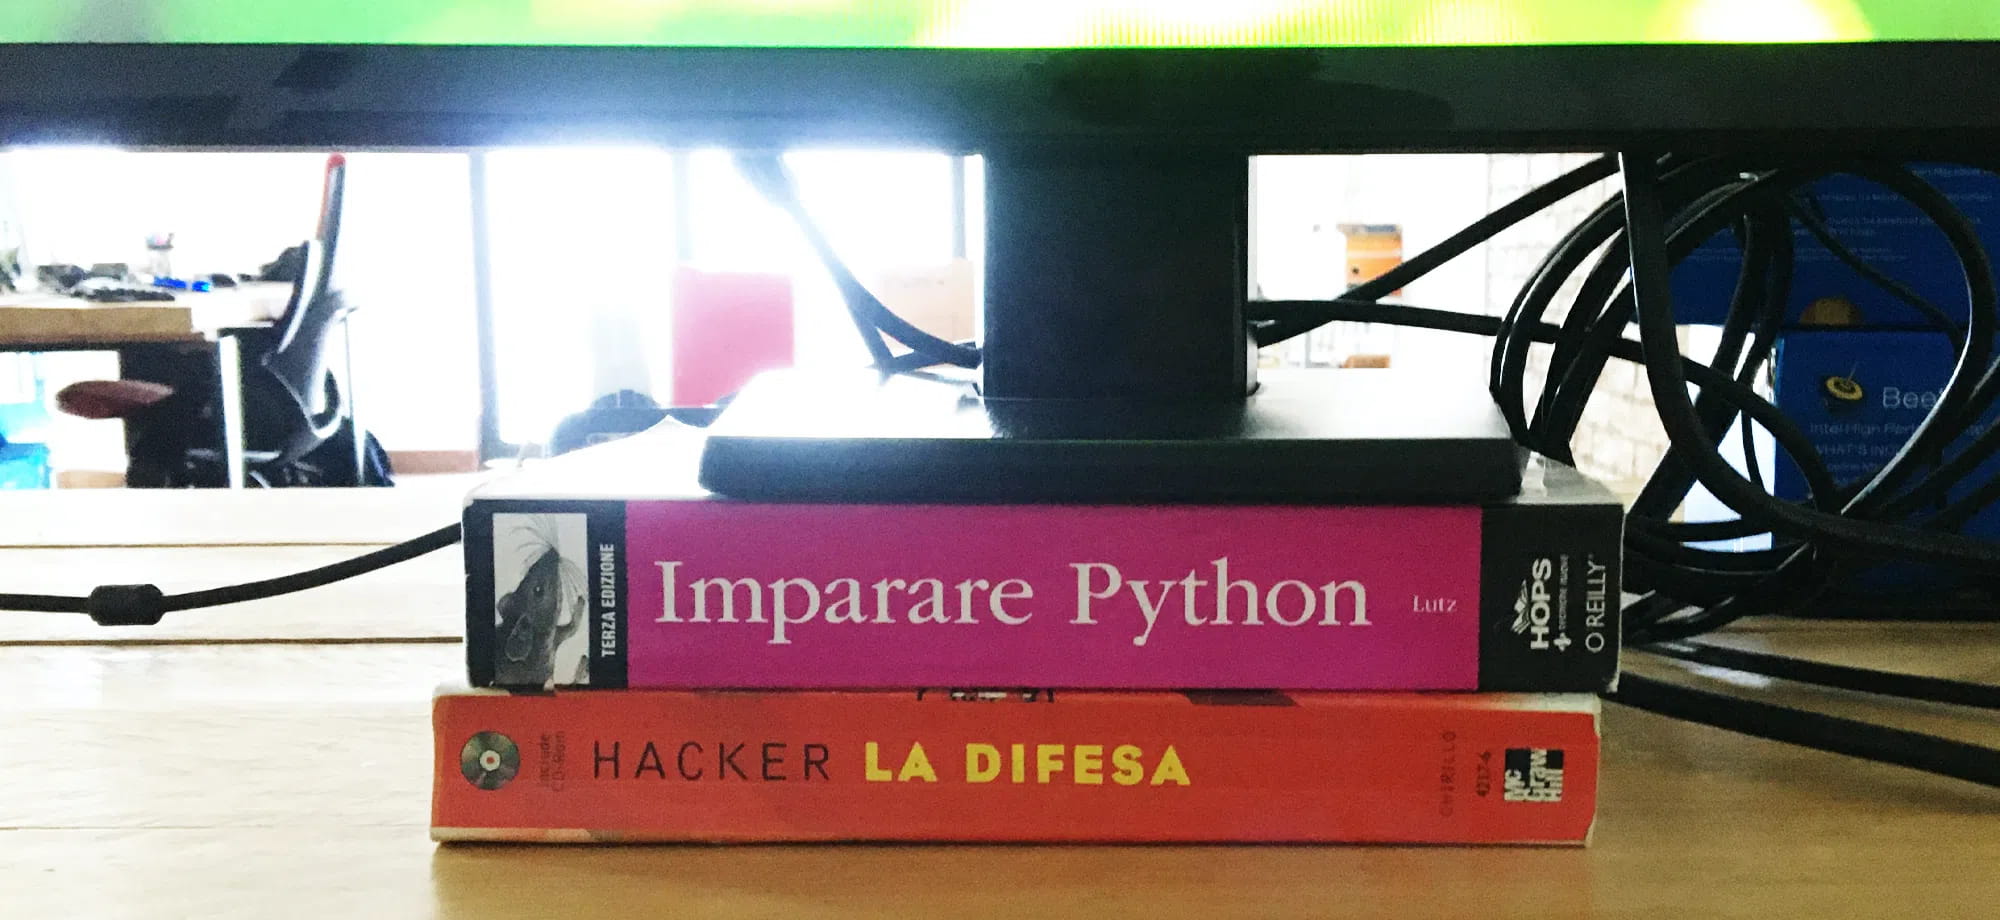 Sede M4SS libri: Hacker la difesa e Imparare Python